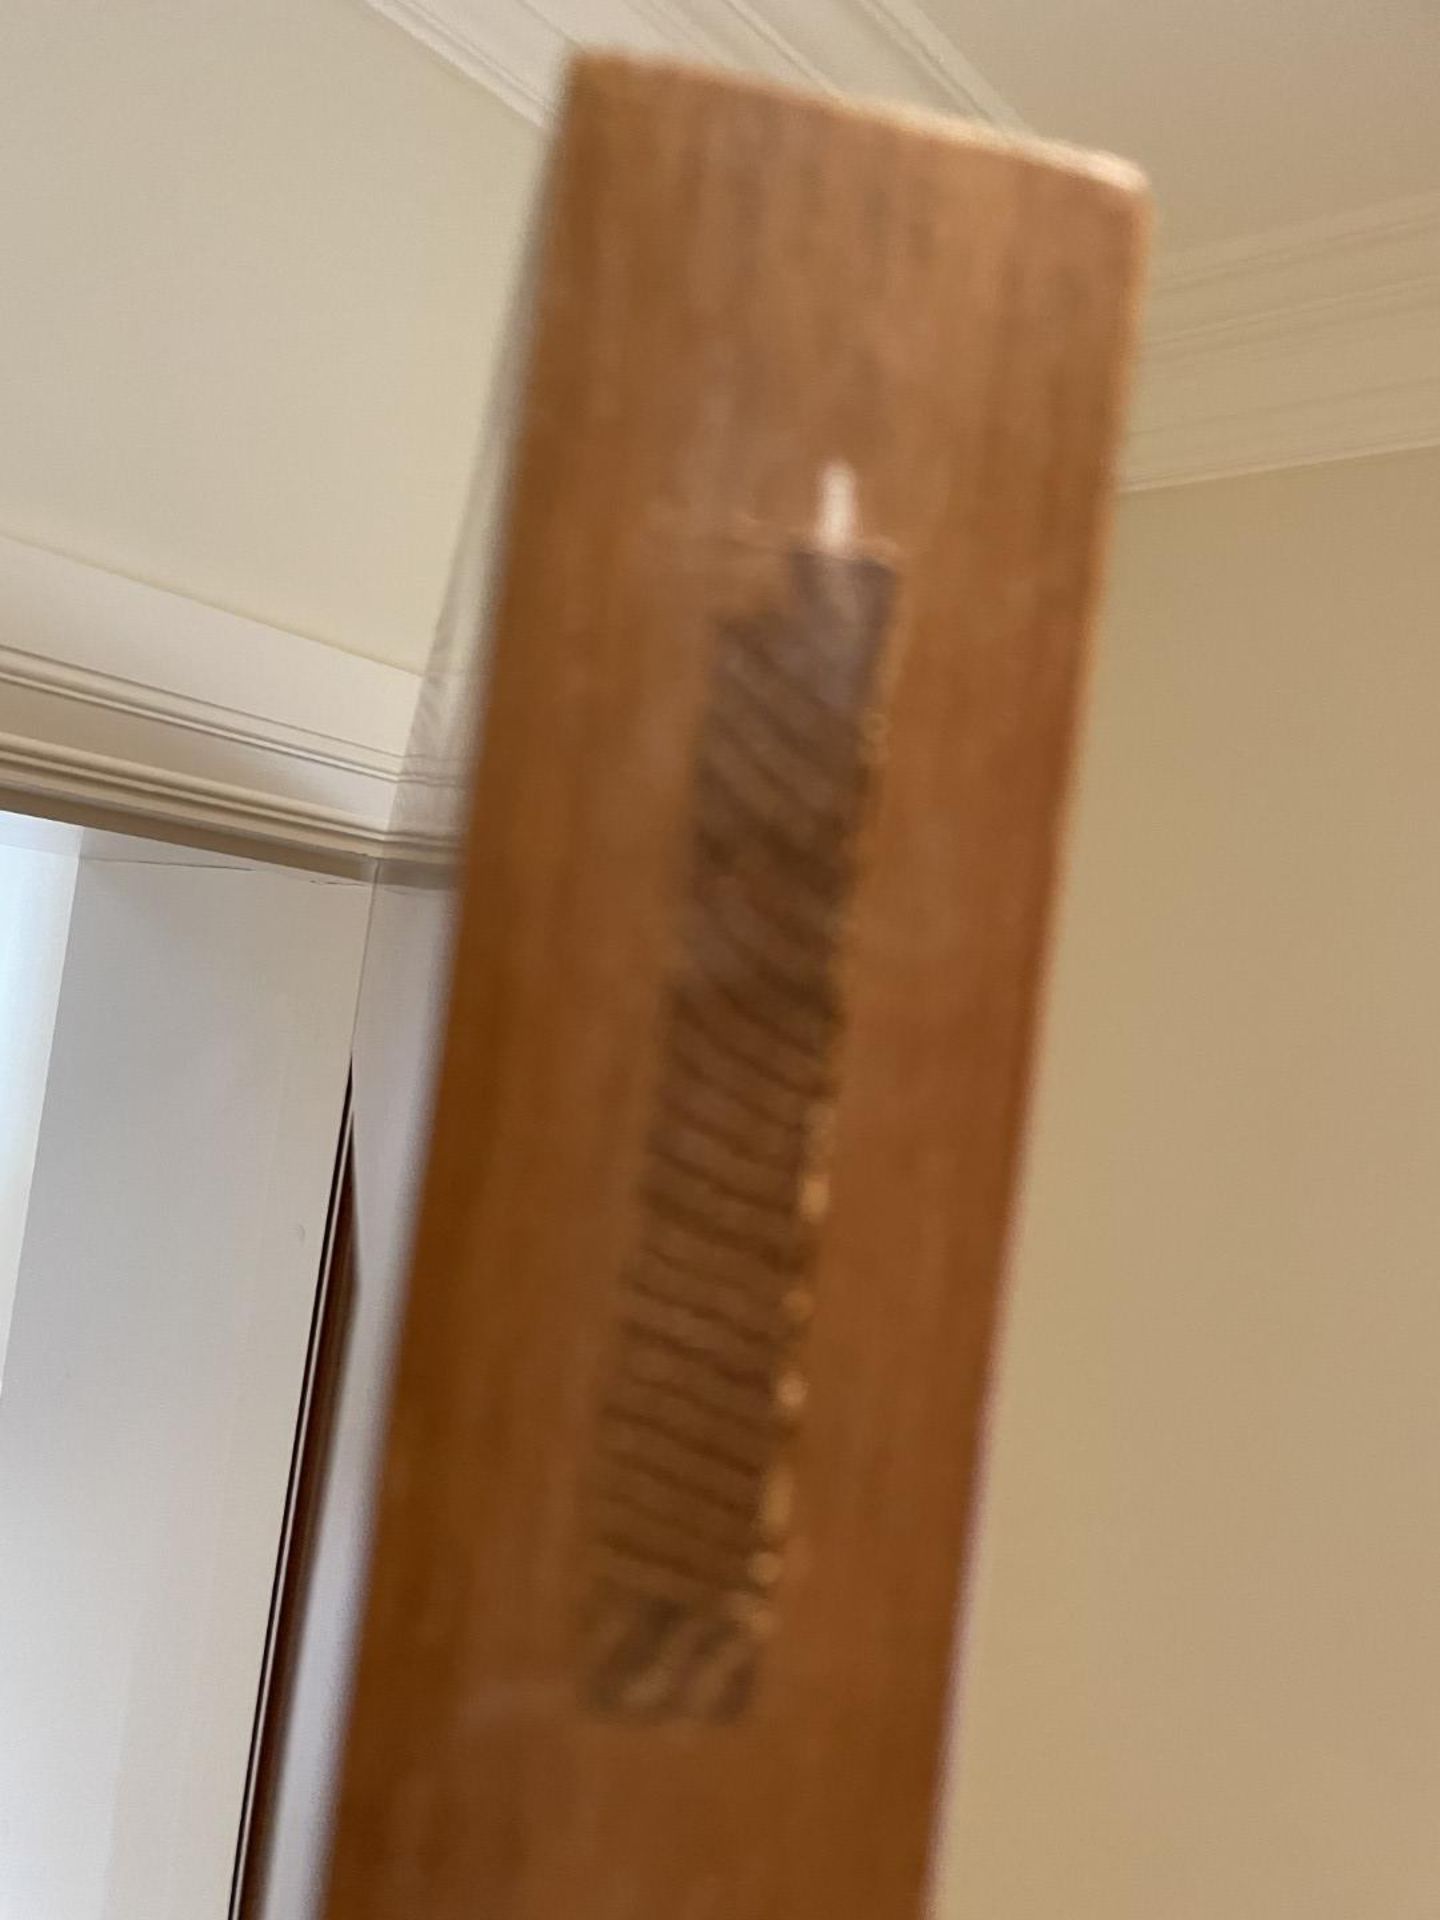 1 x Solid Oak Wooden Lockable Internal Door - Includes Handles and Hinges - Ref: PAN286 / - Image 17 of 17